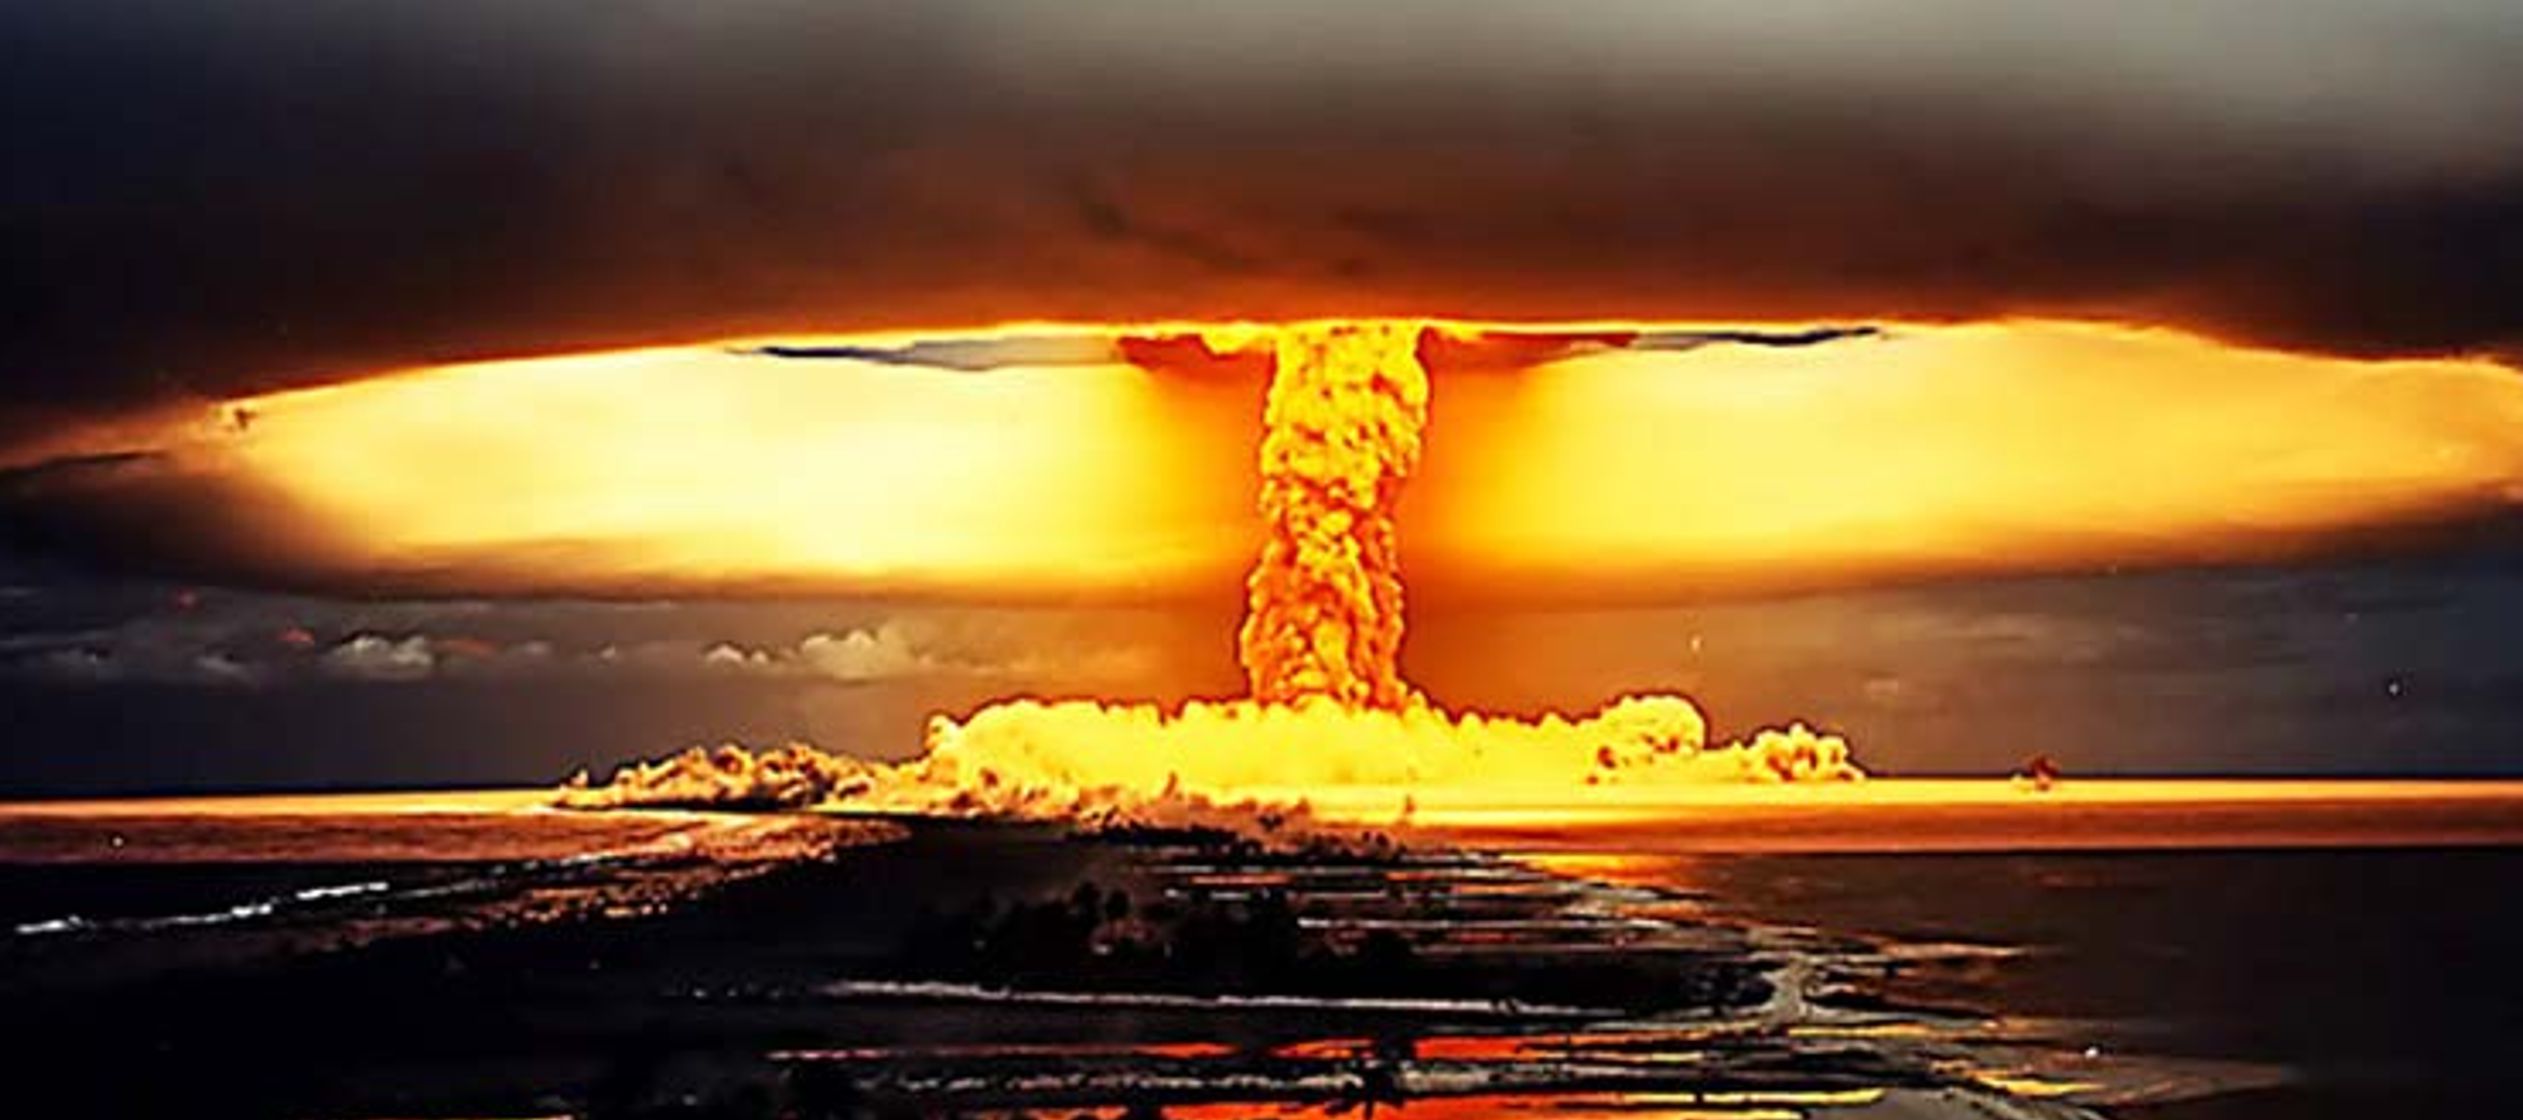 Desde que comenzaron los ensayos de armas nucleares el 16 de julio de 1945, se han desarrollado...